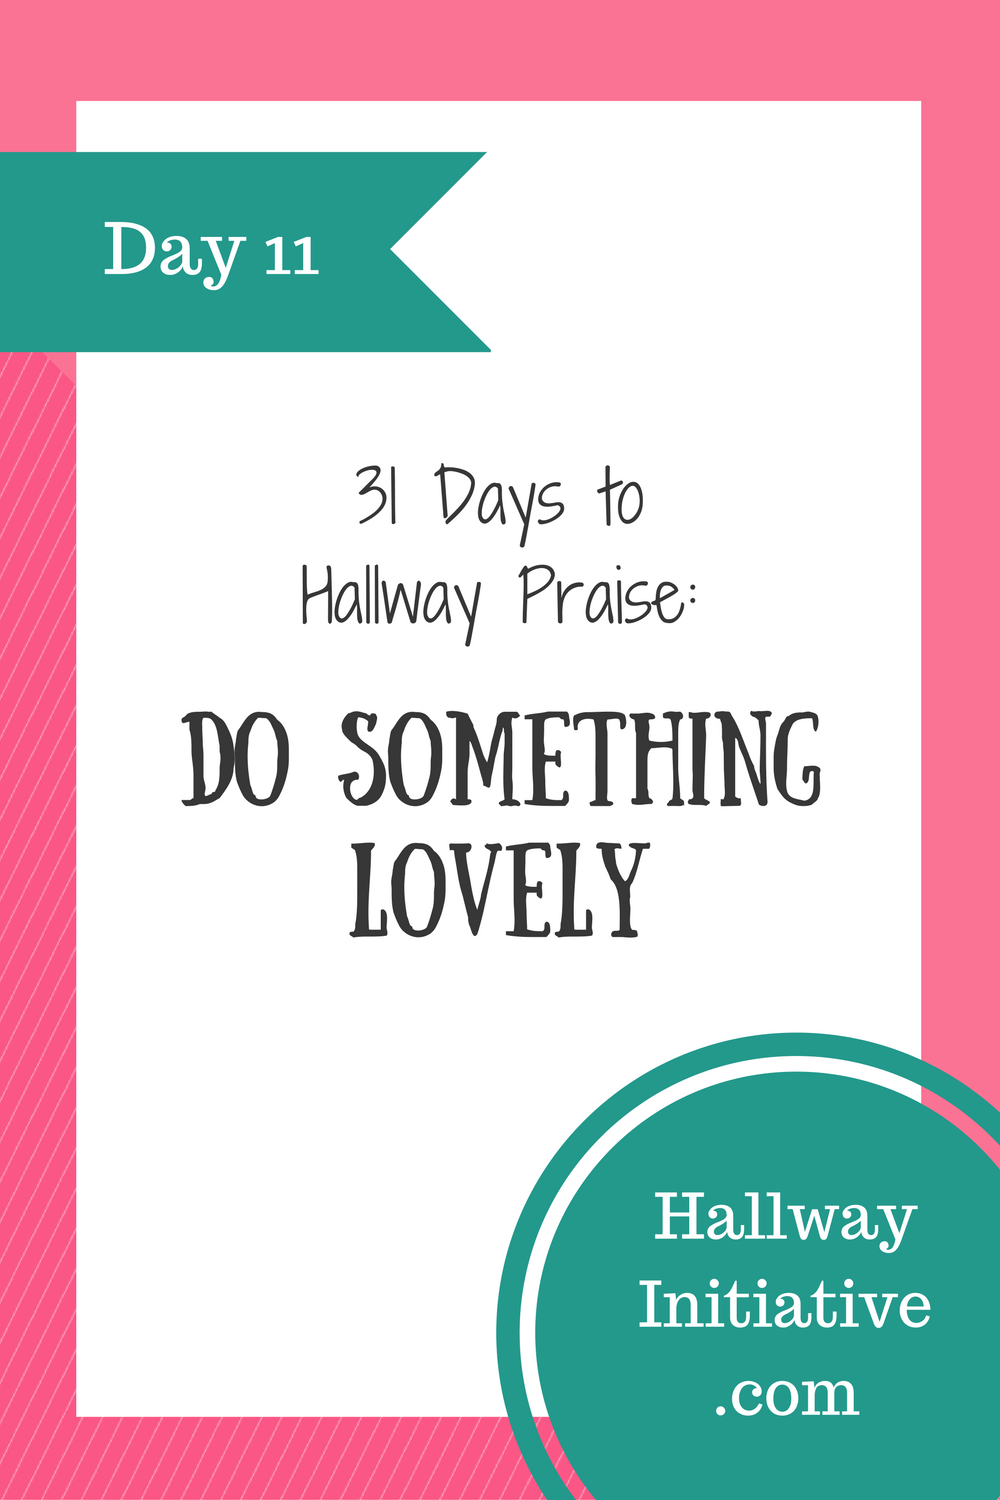 Day 11: do something lovely